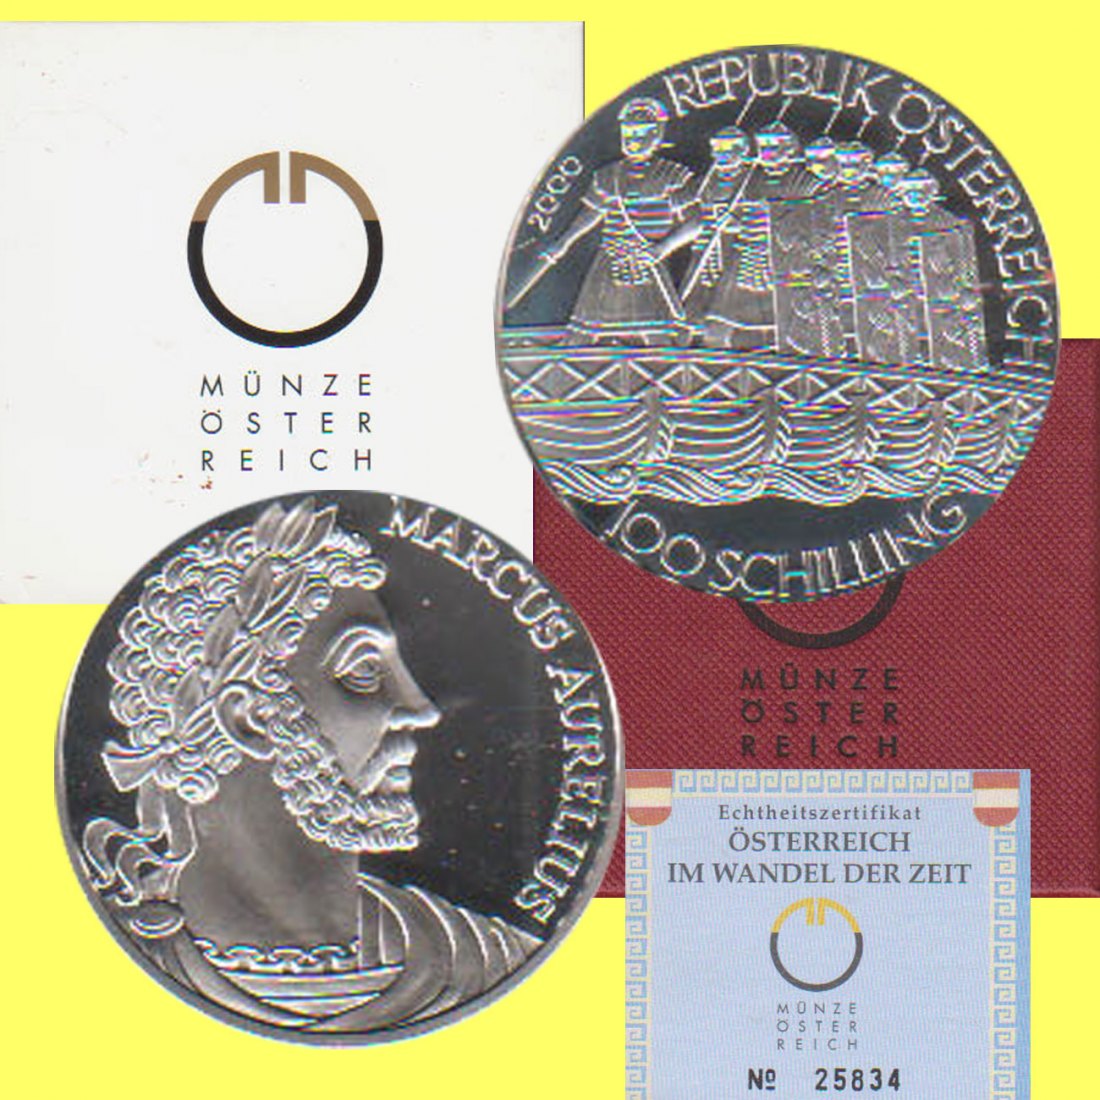  Offiz. 100-öS-Silbermünze Österreich *Die Römer* 2000 *PP* max 30.000St!   